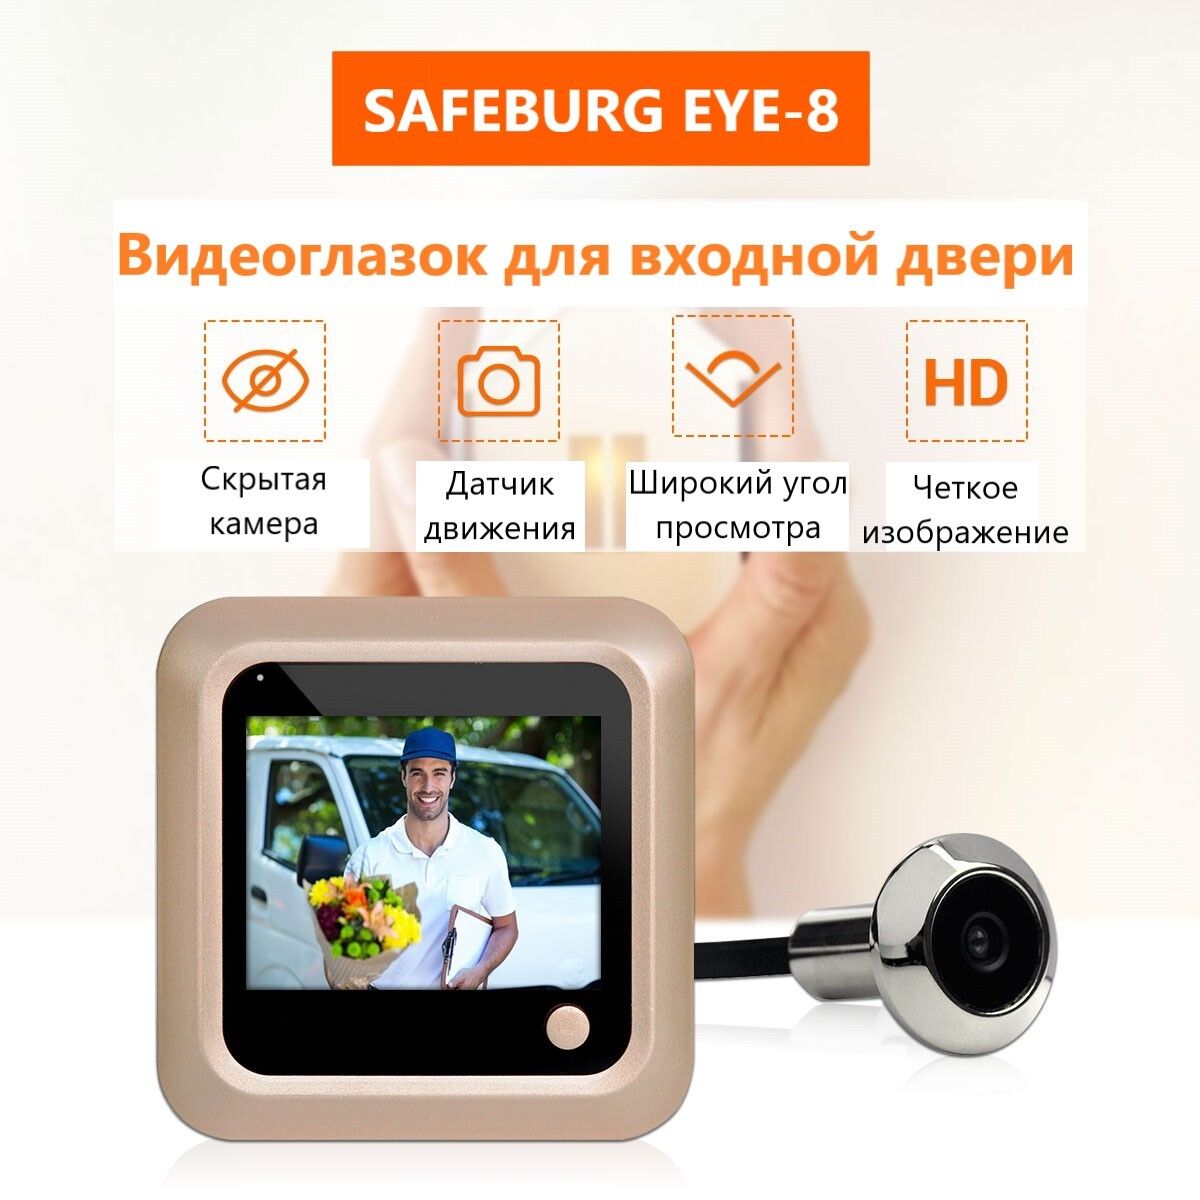 фото Видеоглазок safeburg eye-8 для входной двери с возможностью делать фото снимки